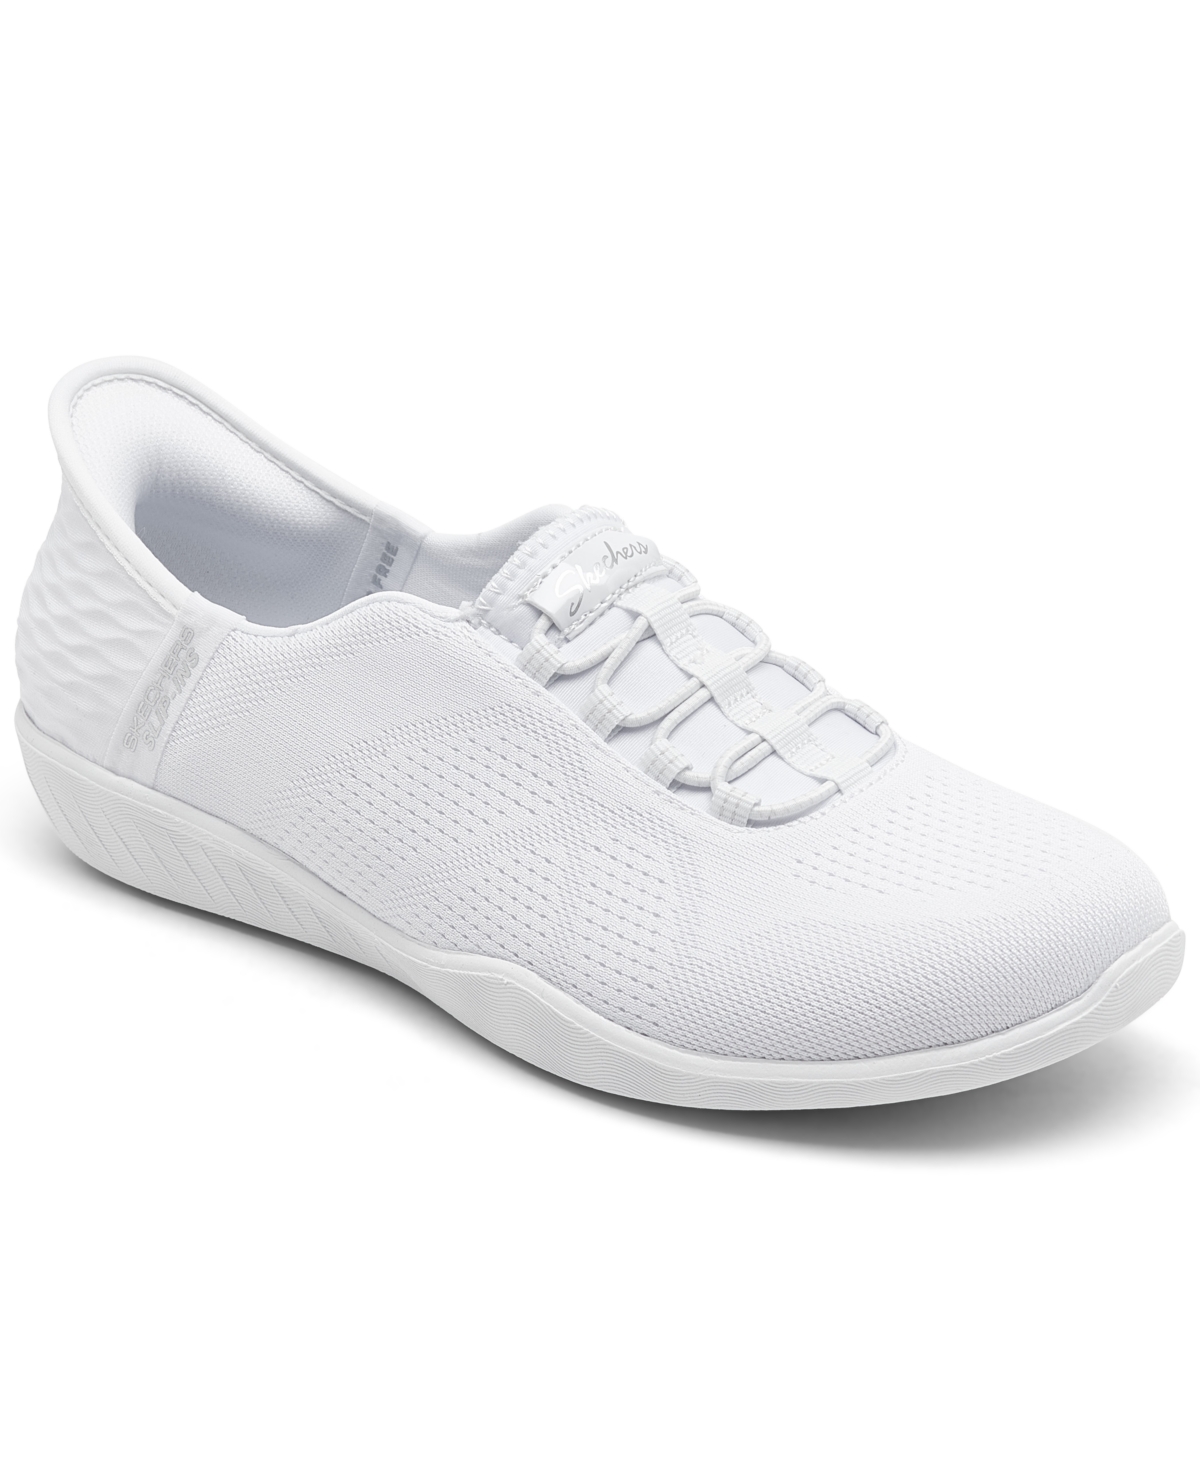 Women's Slip-Ins: Go Walk Flex - Grand Entry Slip-On Walking Sneakers from Finish Line - White/white